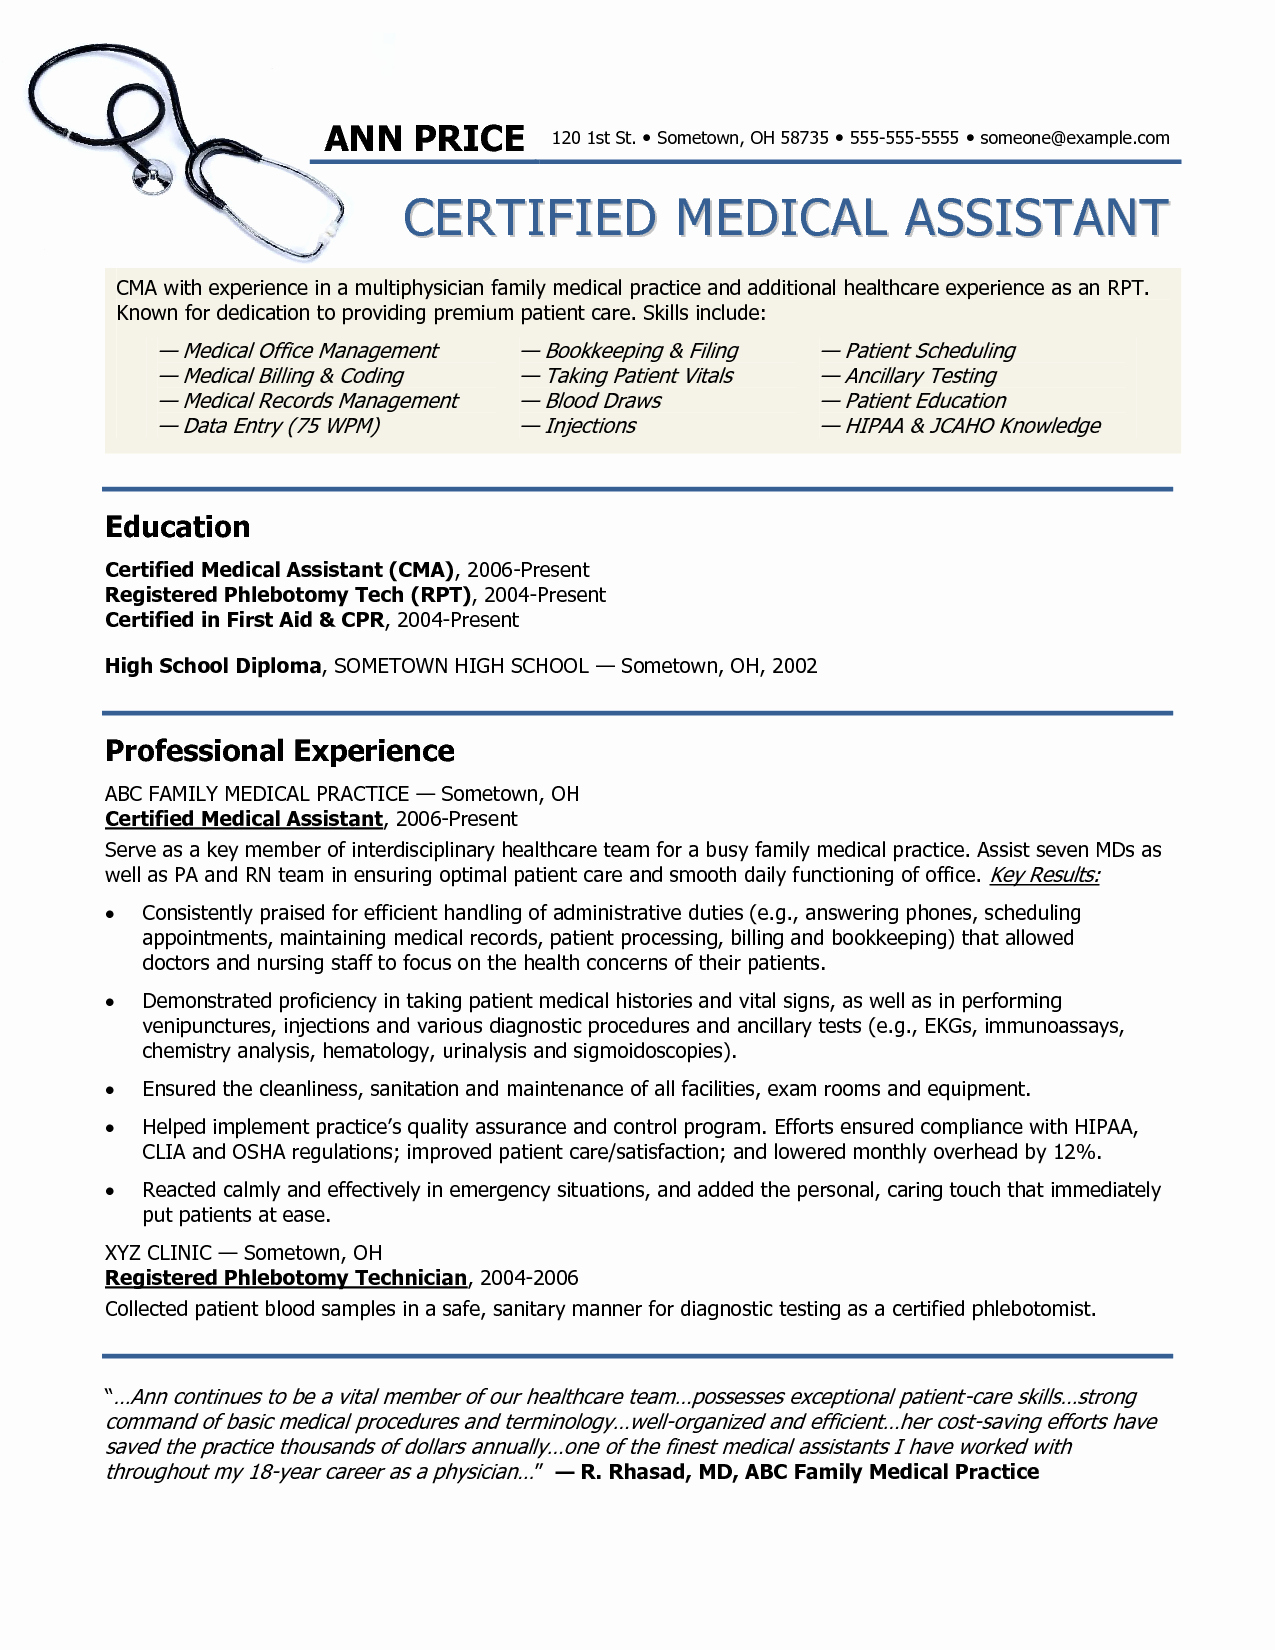 Medical assistant Resume 2016 Samplebusinessresume